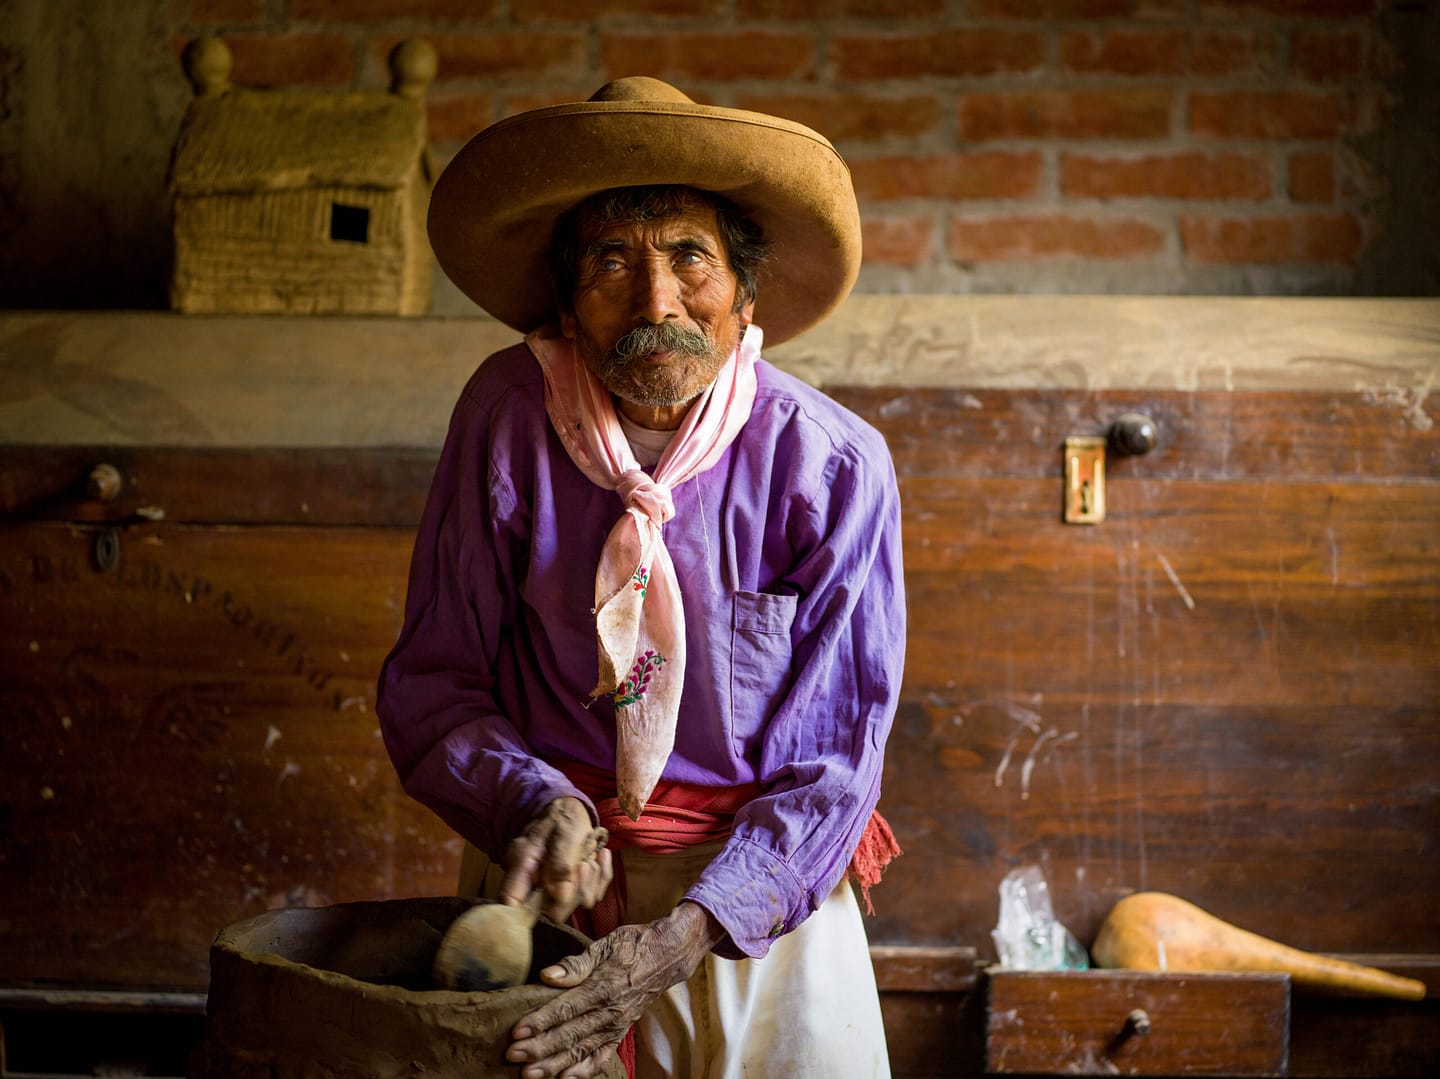 Mexican sculptor, Jose Garcia Antonio works in Oaxaca, Mexico